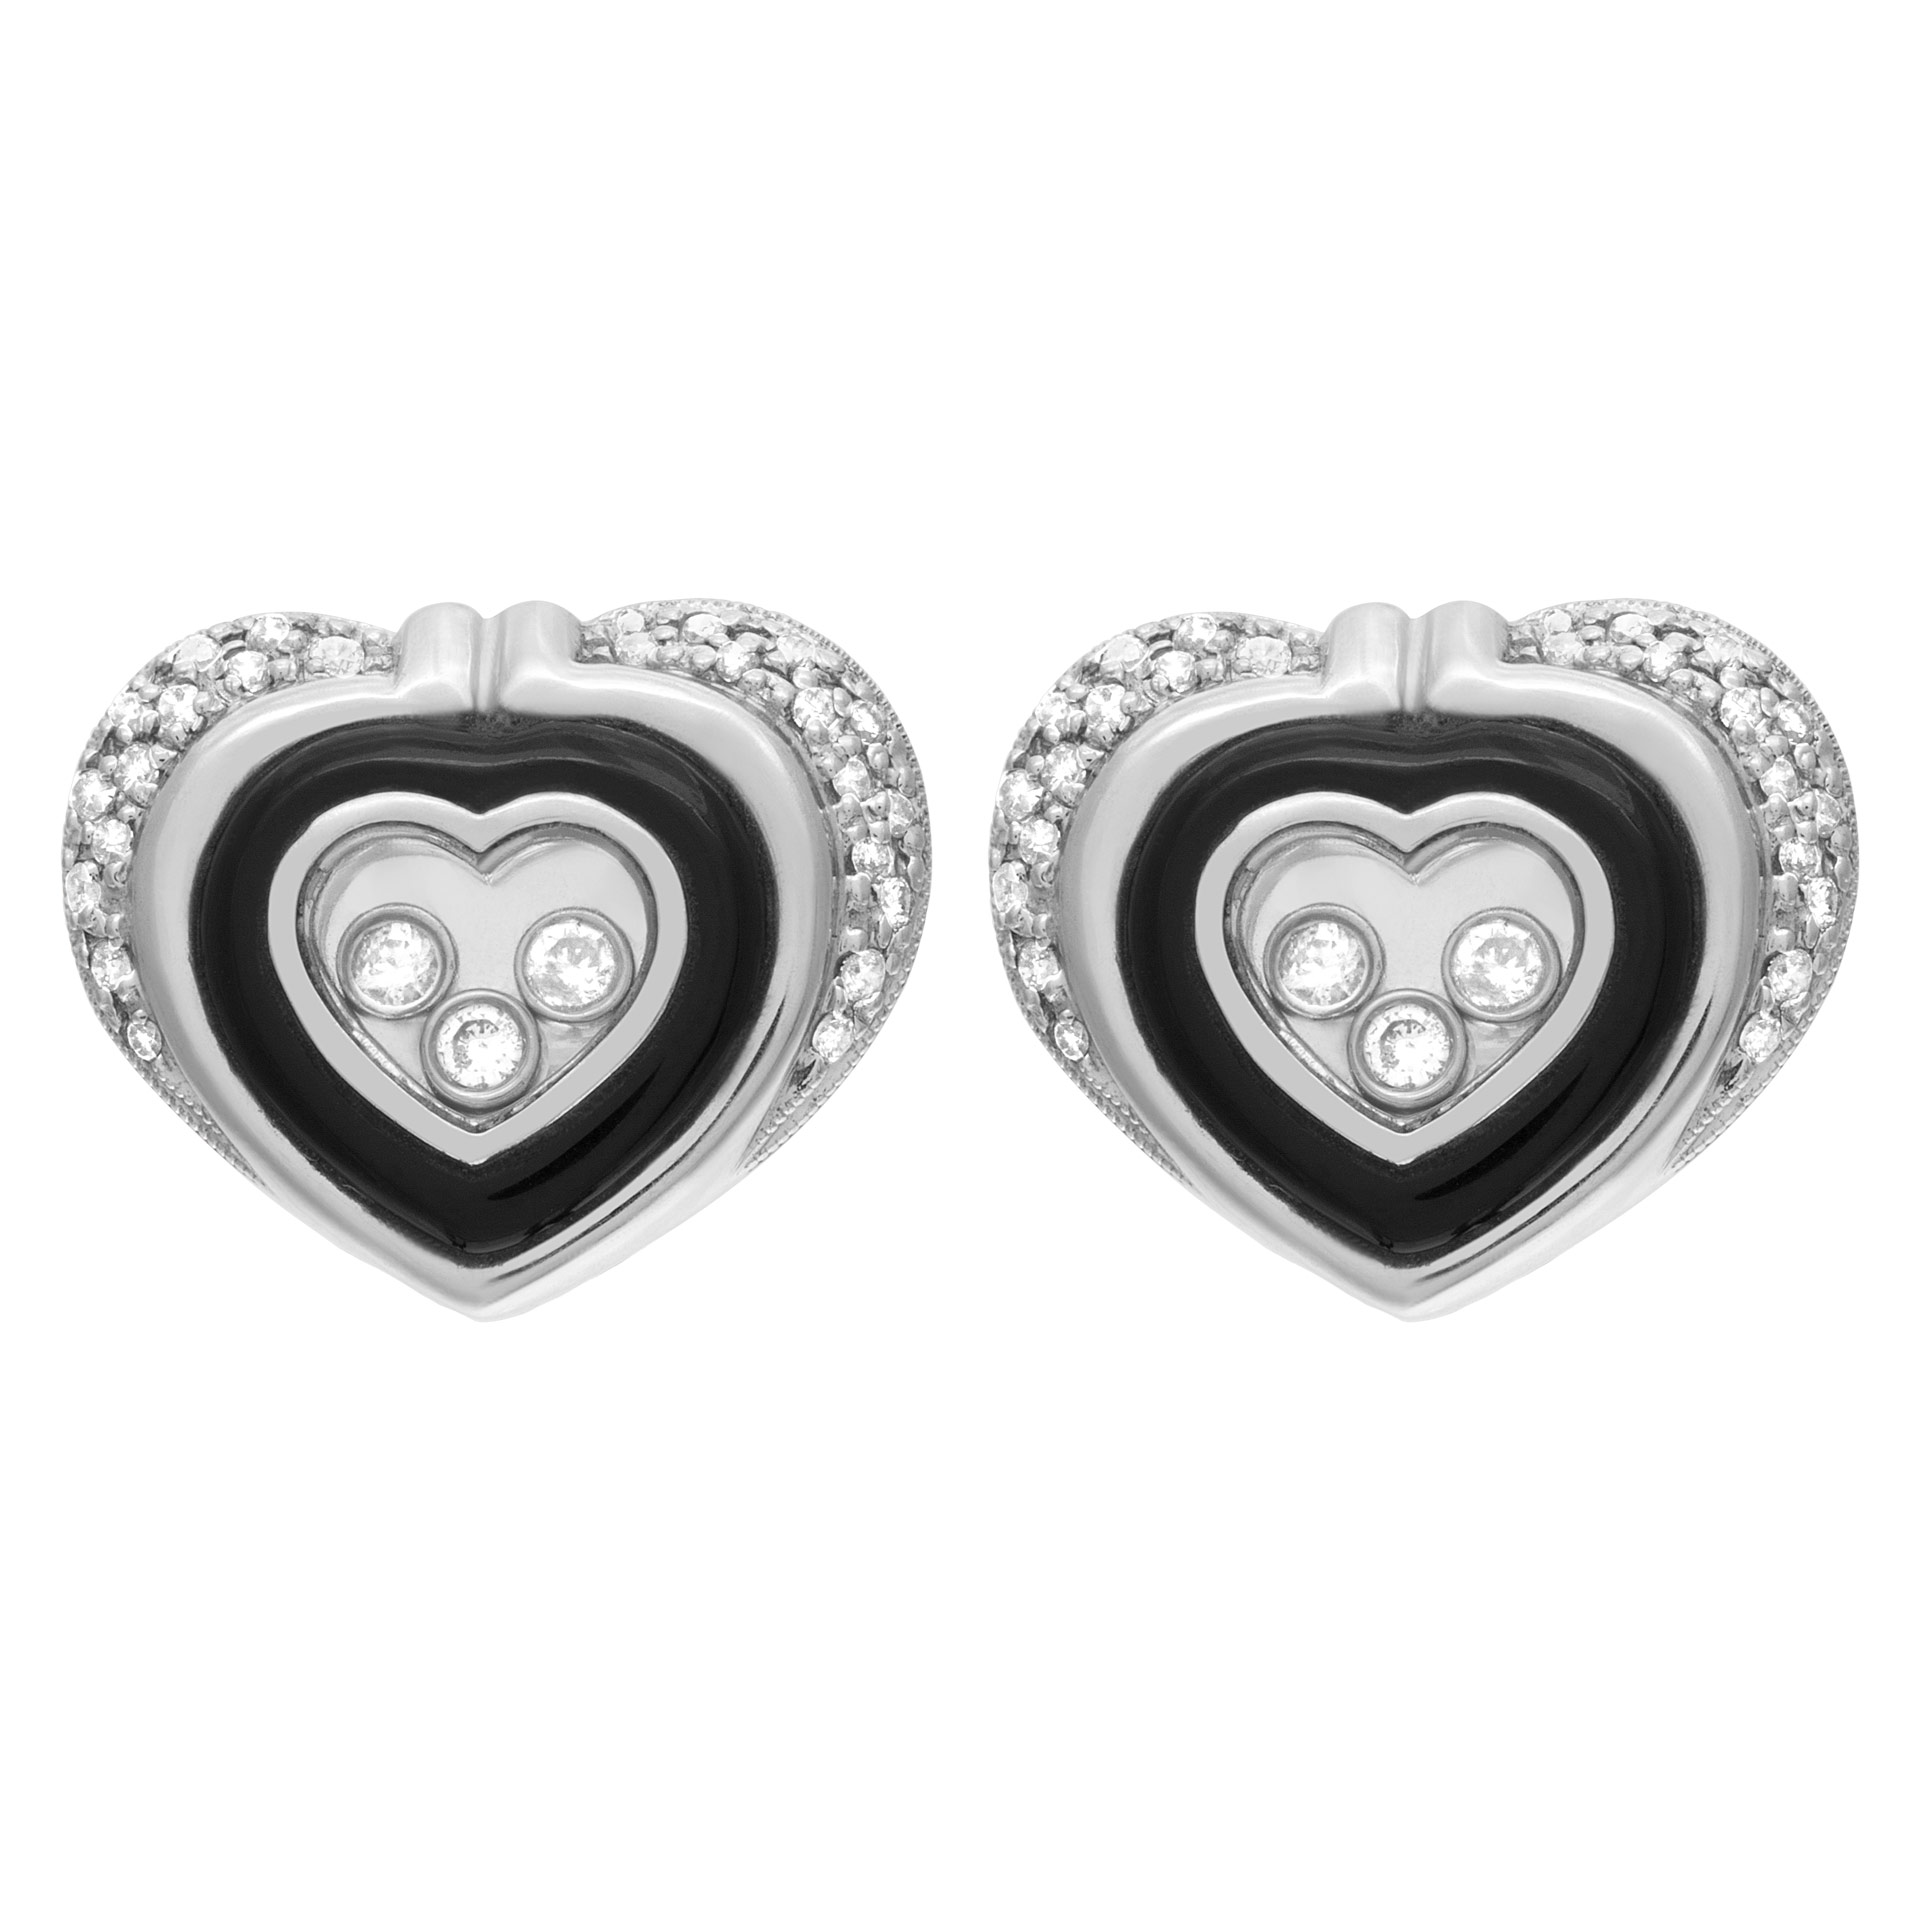 Heart shaped diamond earrings in 14k white gold w/ floating diamonds w/ approx. 0.80 cts in diamonds image 1